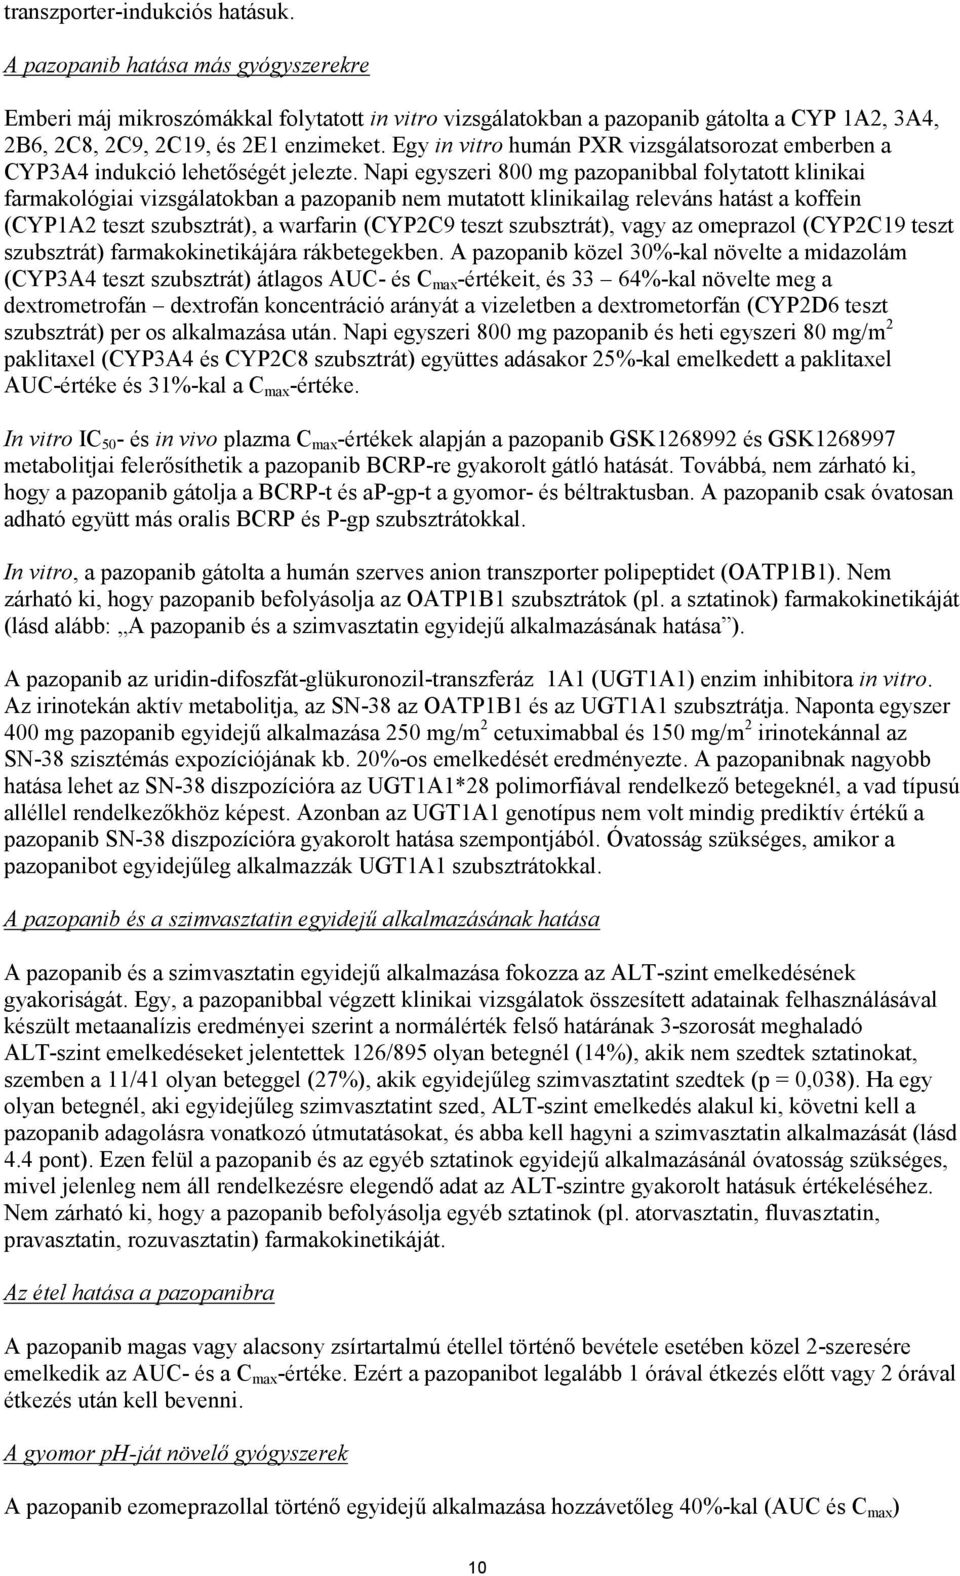 Egy in vitro humán PXR vizsgálatsorozat emberben a CYP3A4 indukció lehetőségét jelezte.